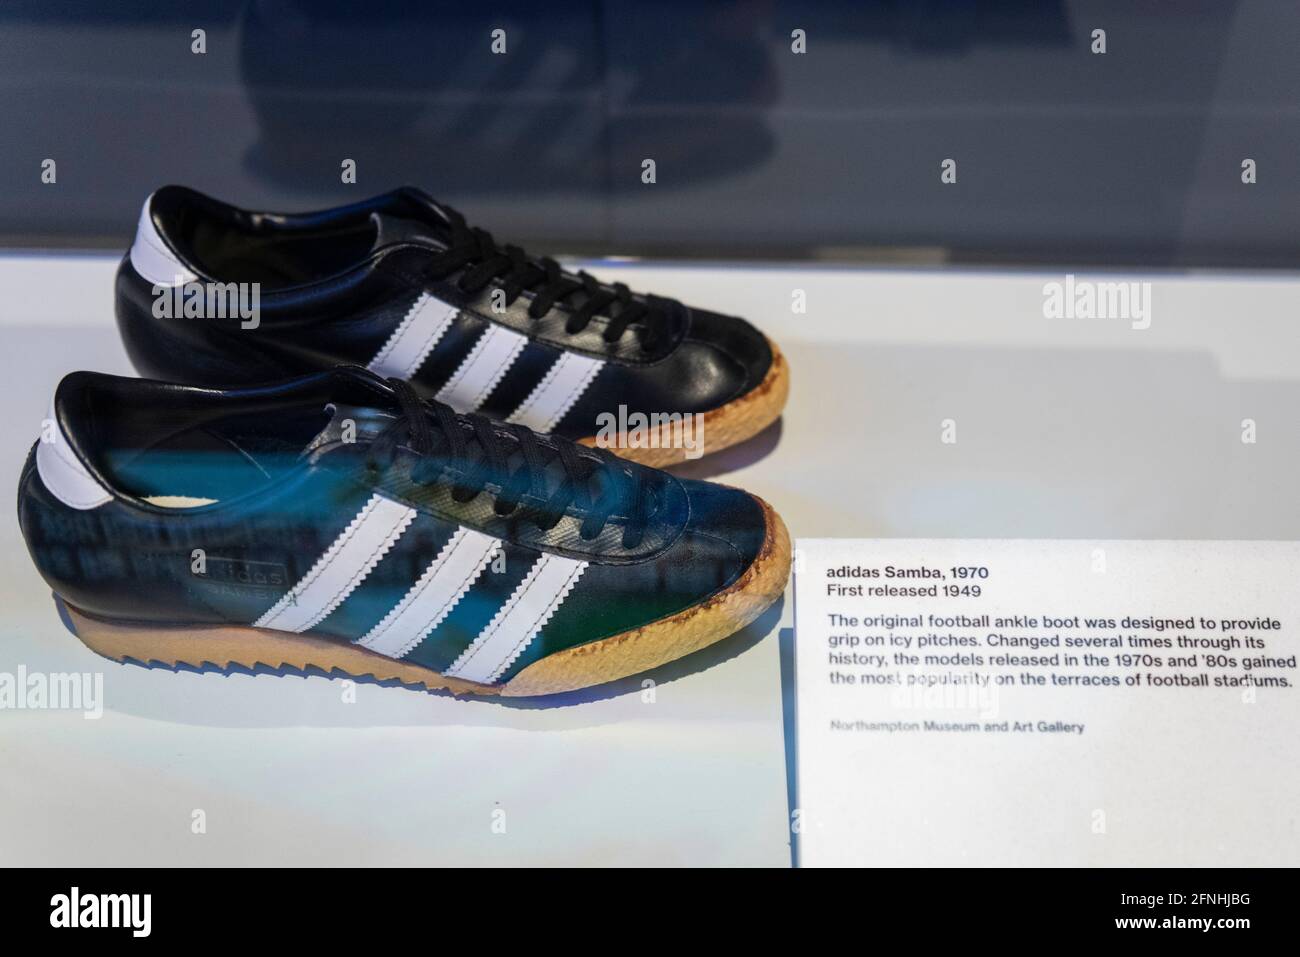 Londres, Reino Unido. 17 de mayo de 2021. 'Adidas Samba', 1970, publicado  por primera vez en 1940. Las botas de fútbol originales para el tobillo se  han diseñado para proporcionar agarre en